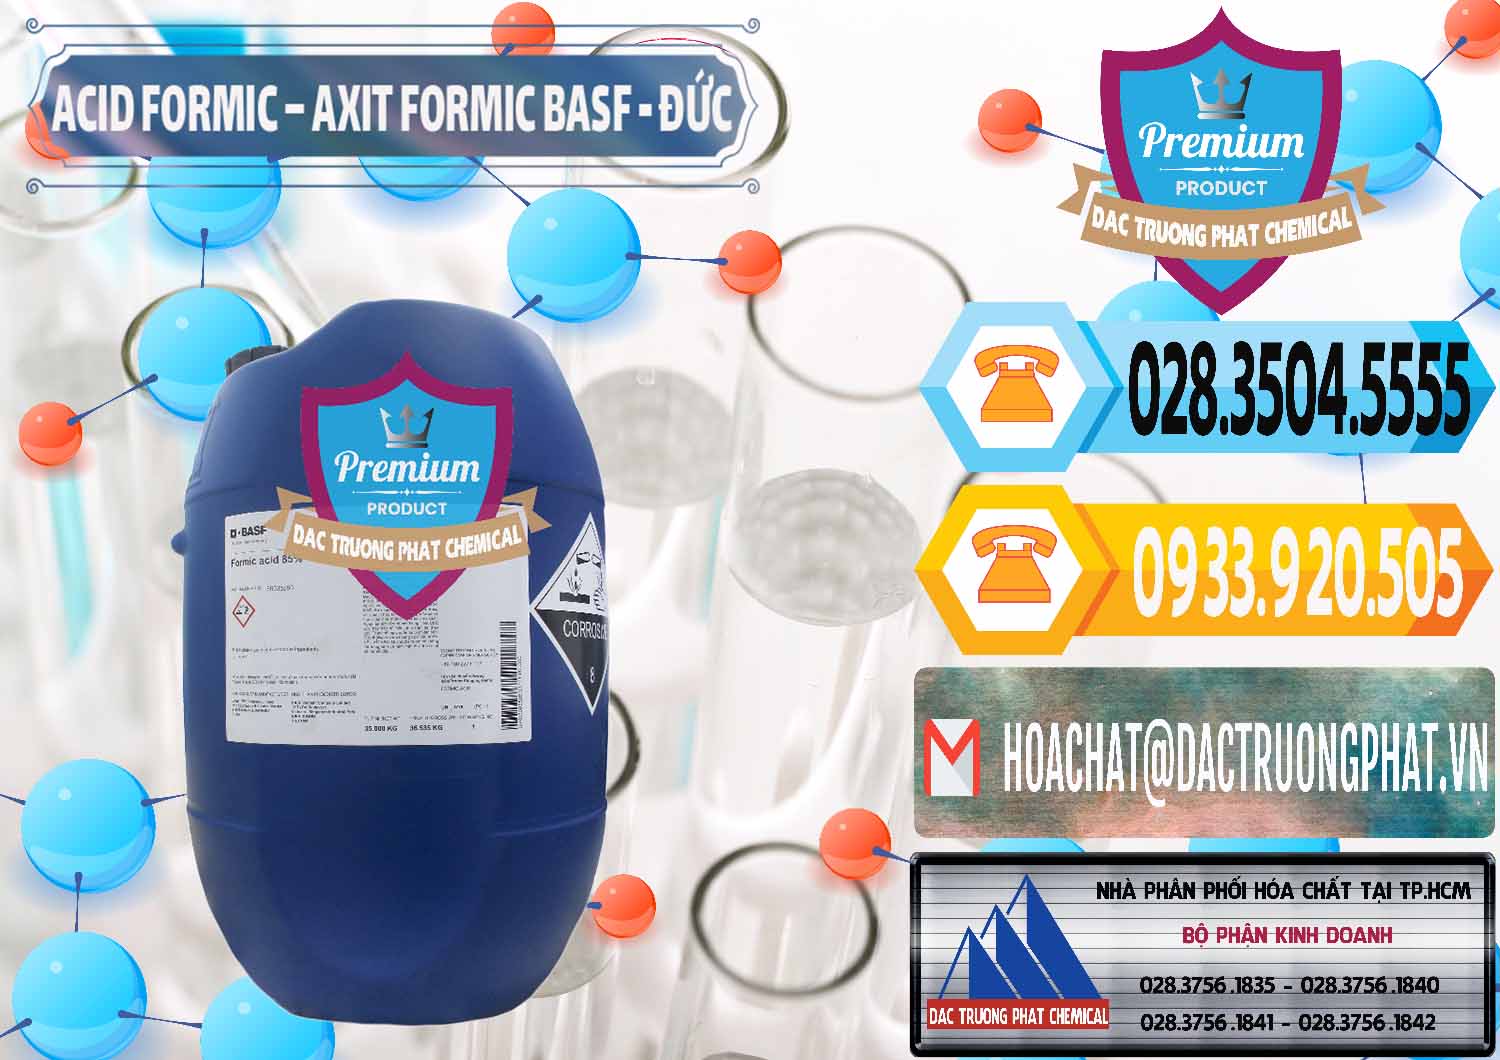 Chuyên bán _ phân phối Acid Formic - Axit Formic BASF Đức Germany - 0028 - Đơn vị chuyên bán ( cung cấp ) hóa chất tại TP.HCM - hoachattayrua.net